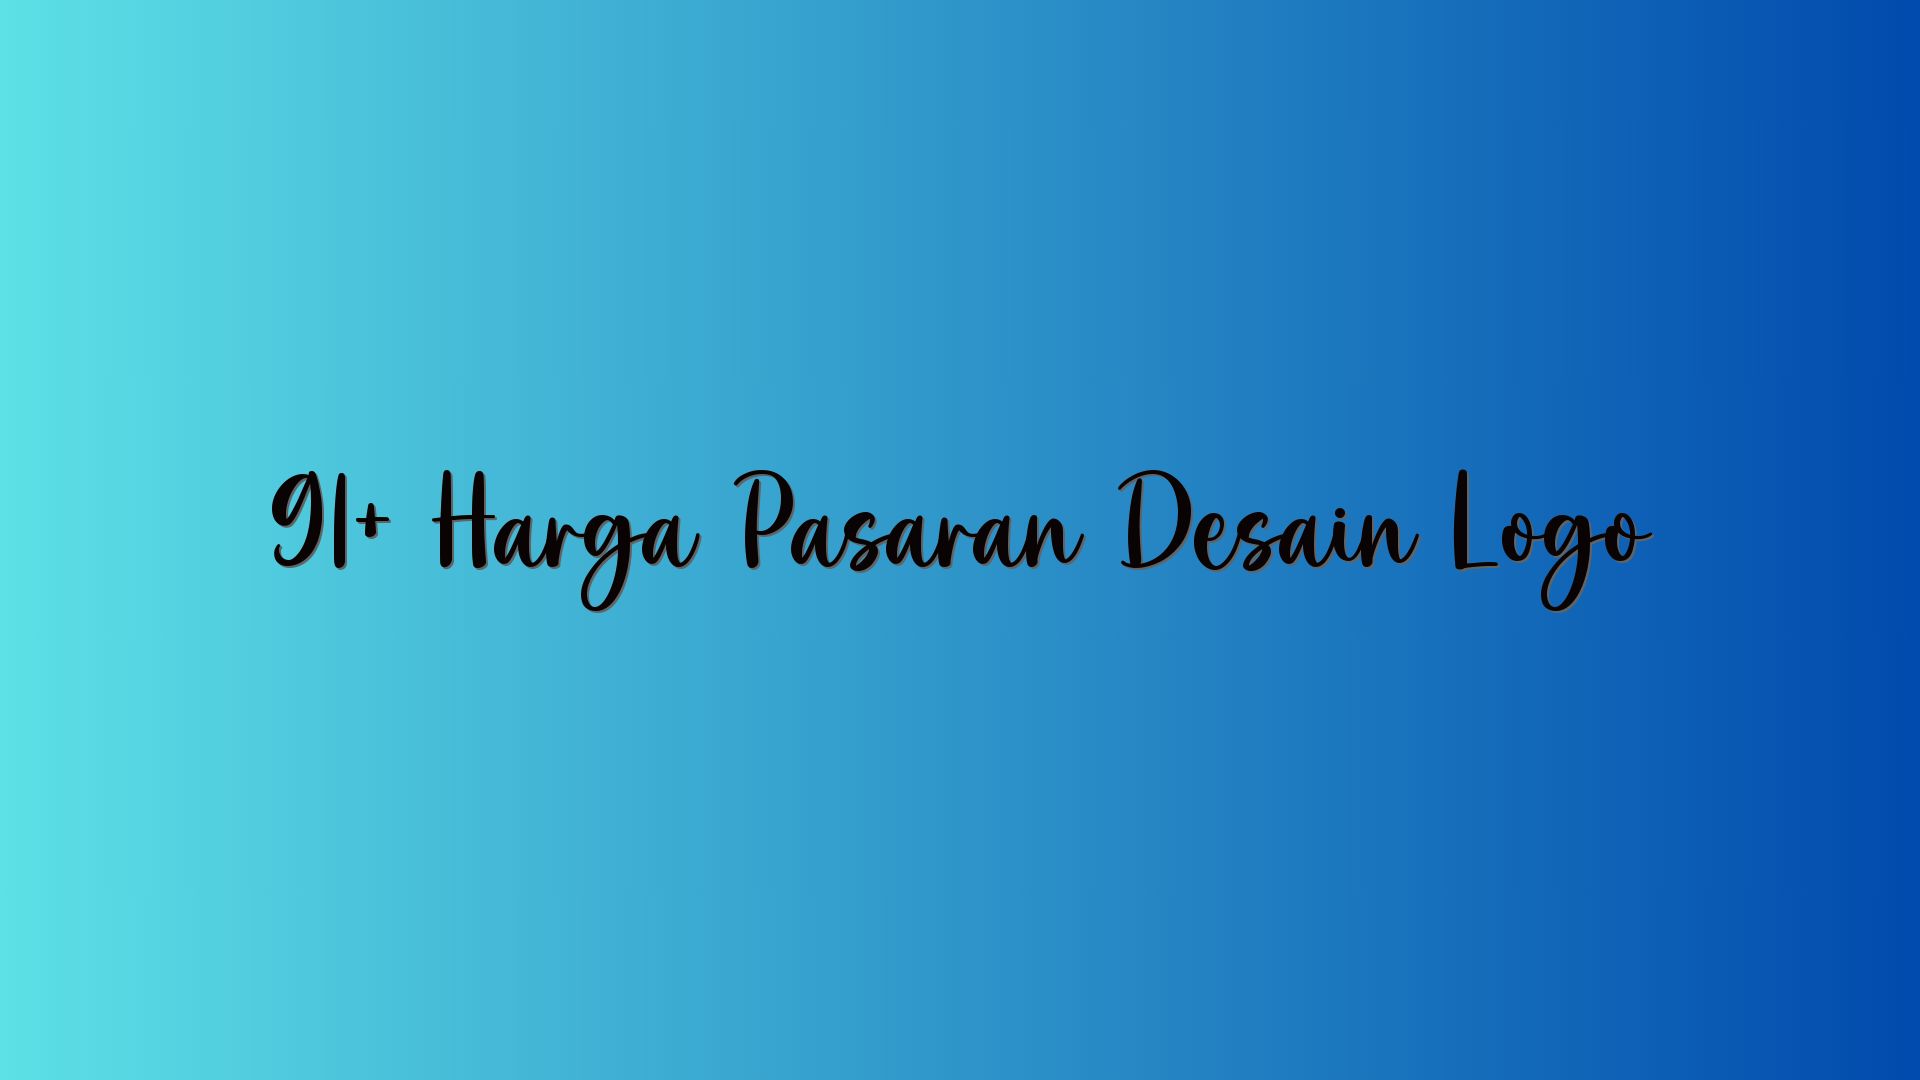 91+ Harga Pasaran Desain Logo